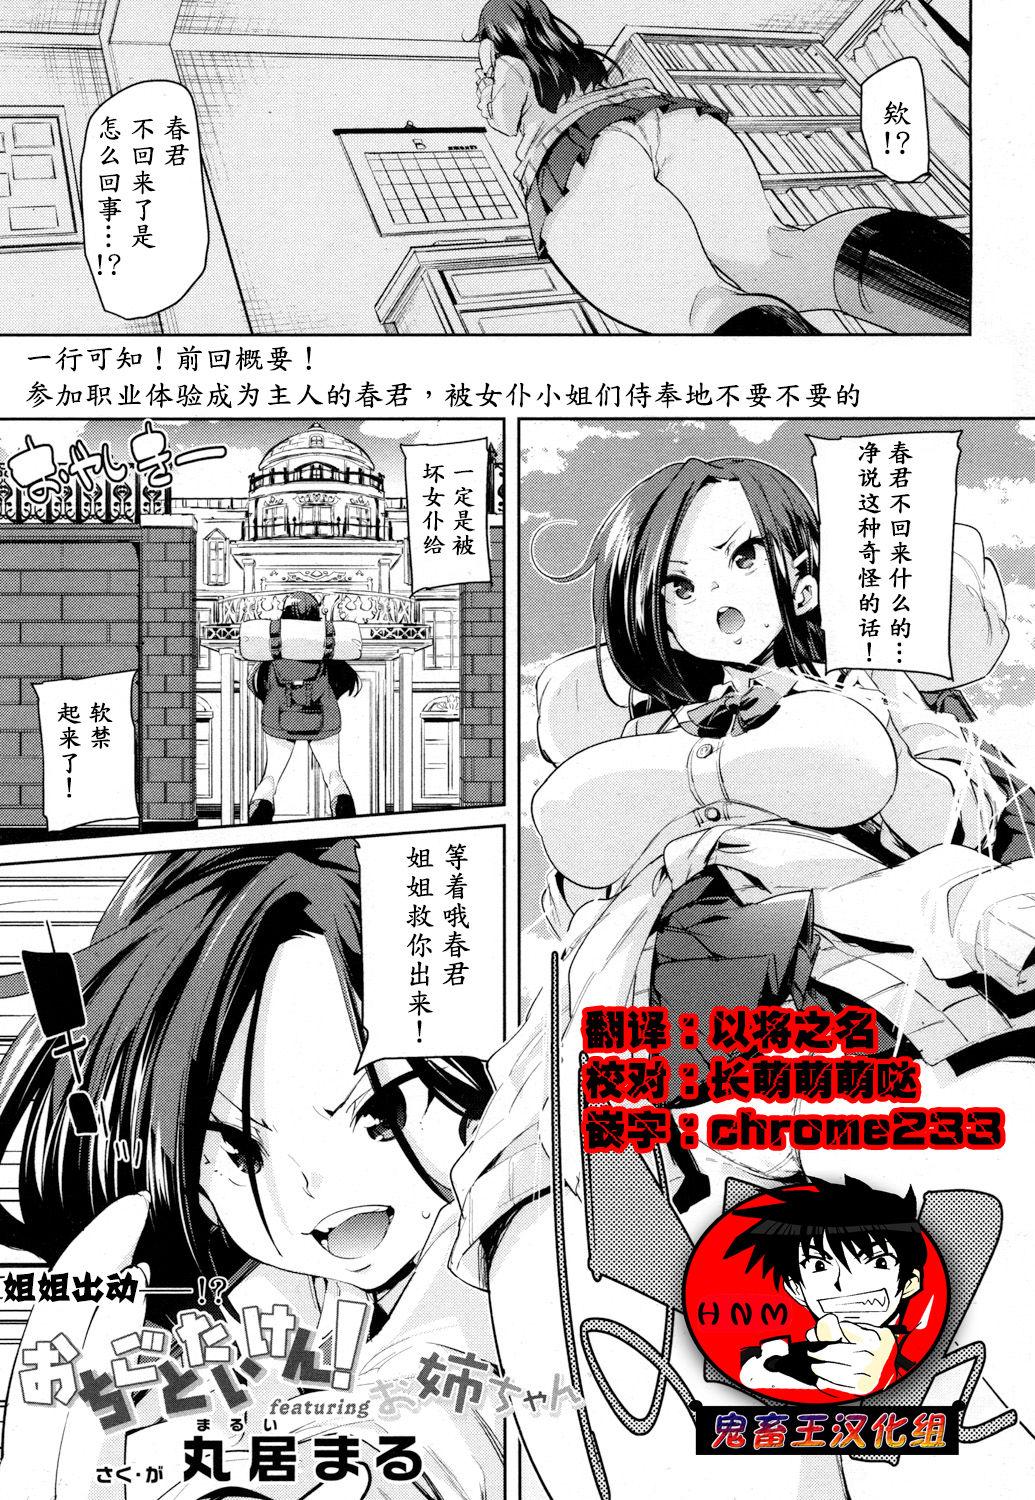 Sucking Dick Ochigo to Taiken! featuring Onee-chan Curious - Page 1